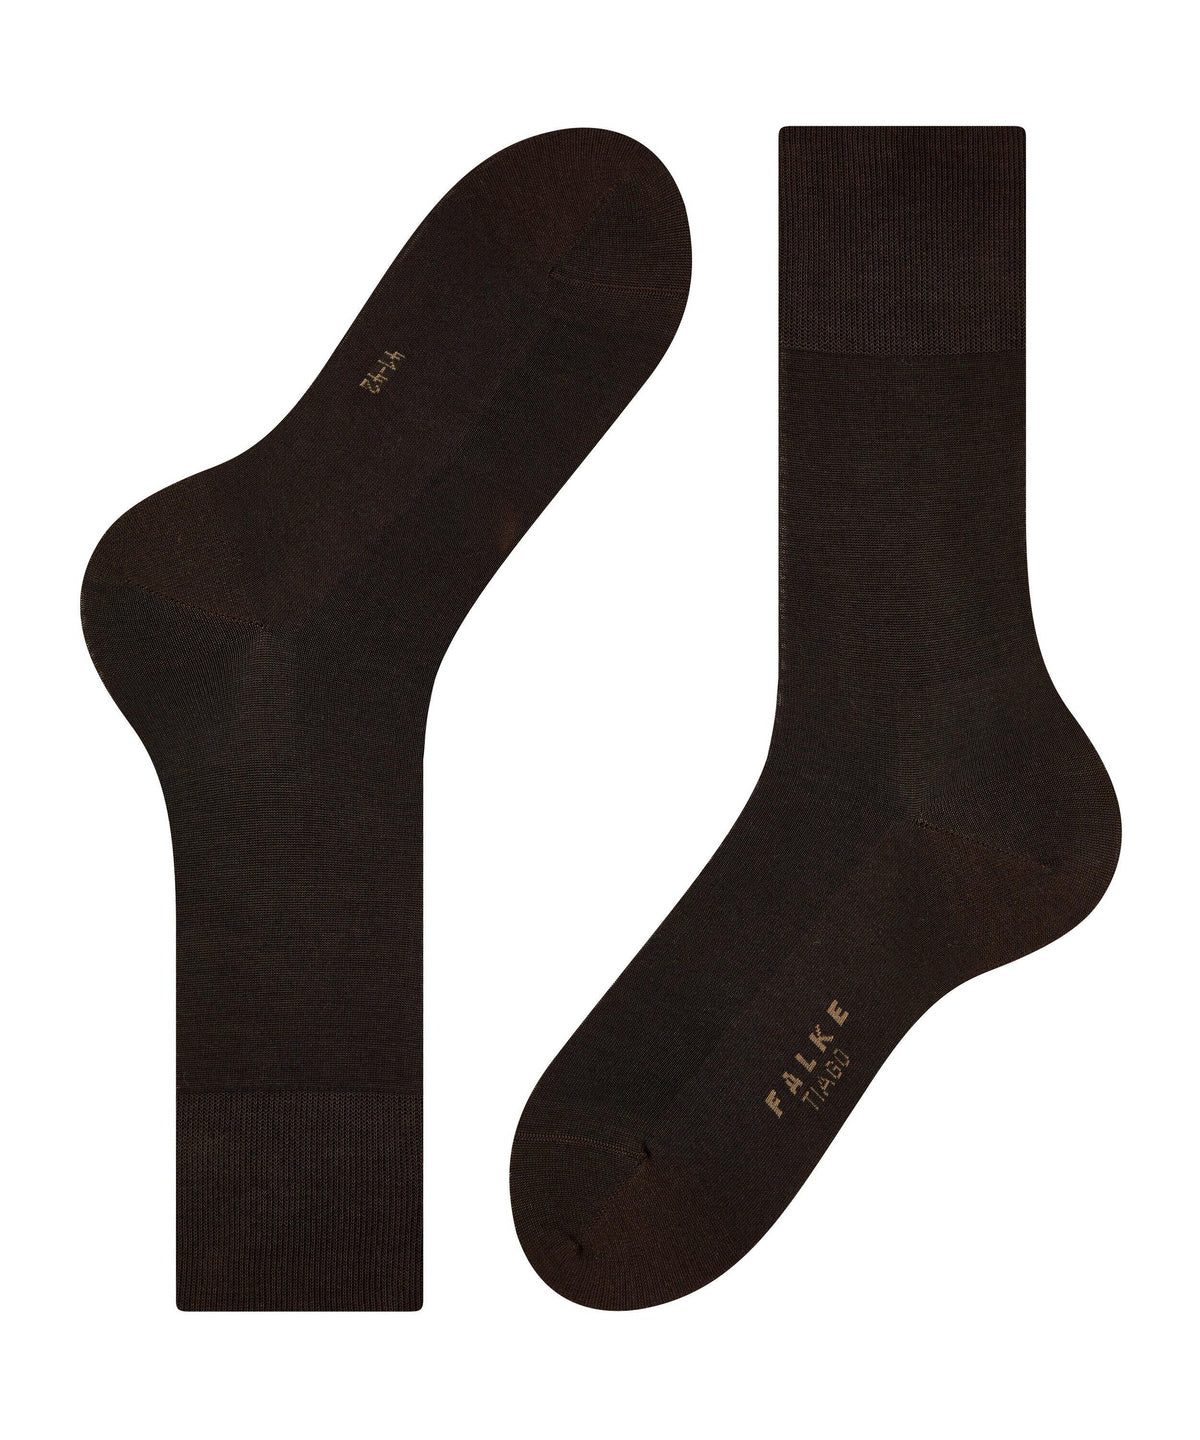 Falke brown dress sock